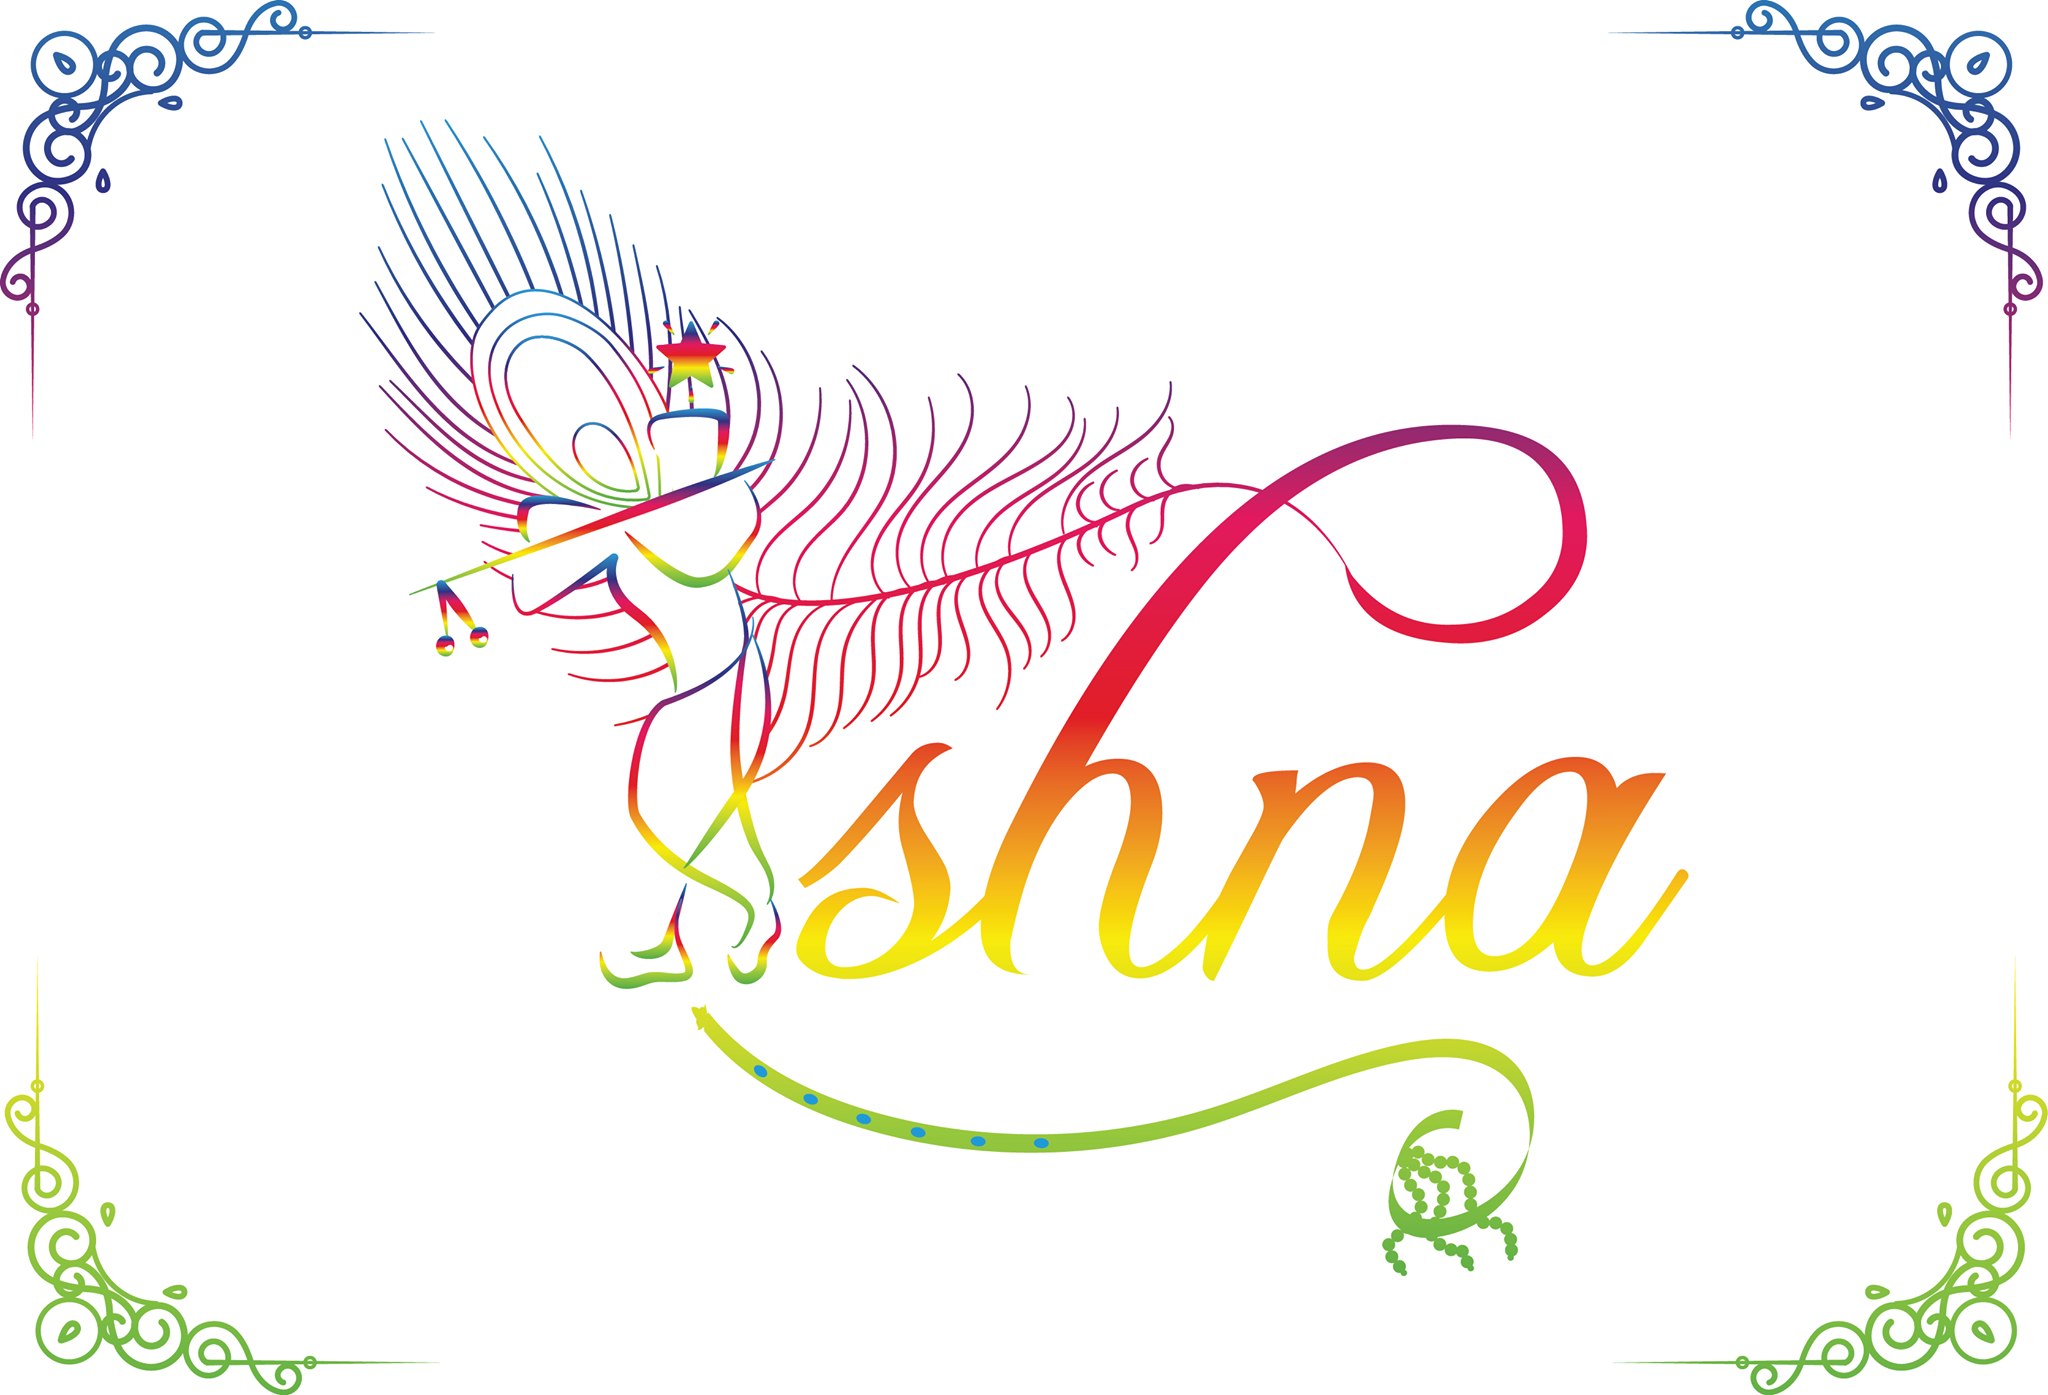 Ishna Production